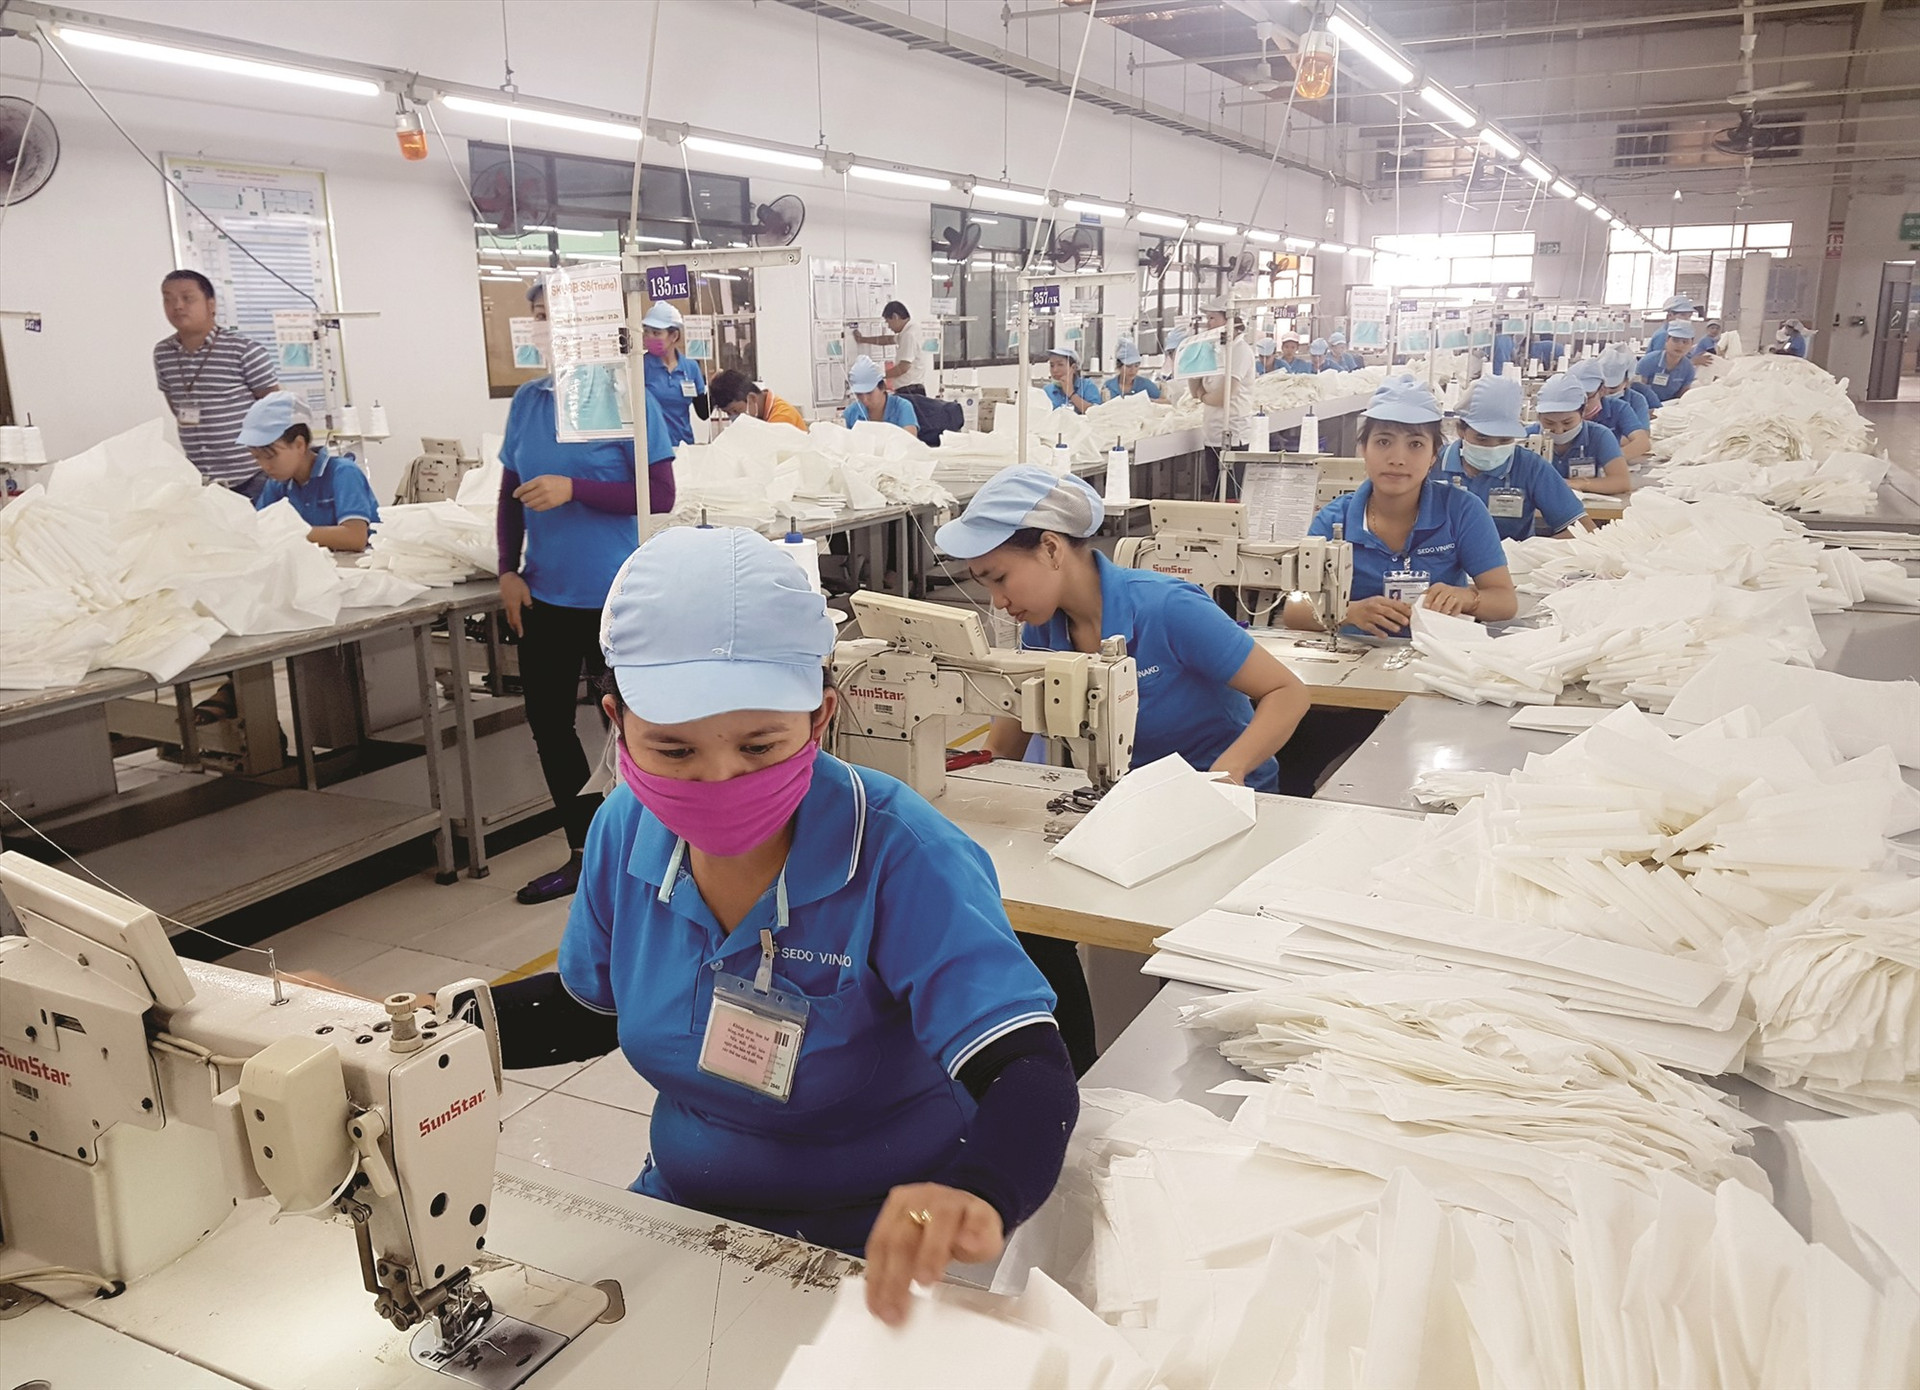 Dệt may là một trong những mặt hàng xuất khẩu chủ yếu của Quảng Nam. Ảnh: DIỄM LỆ